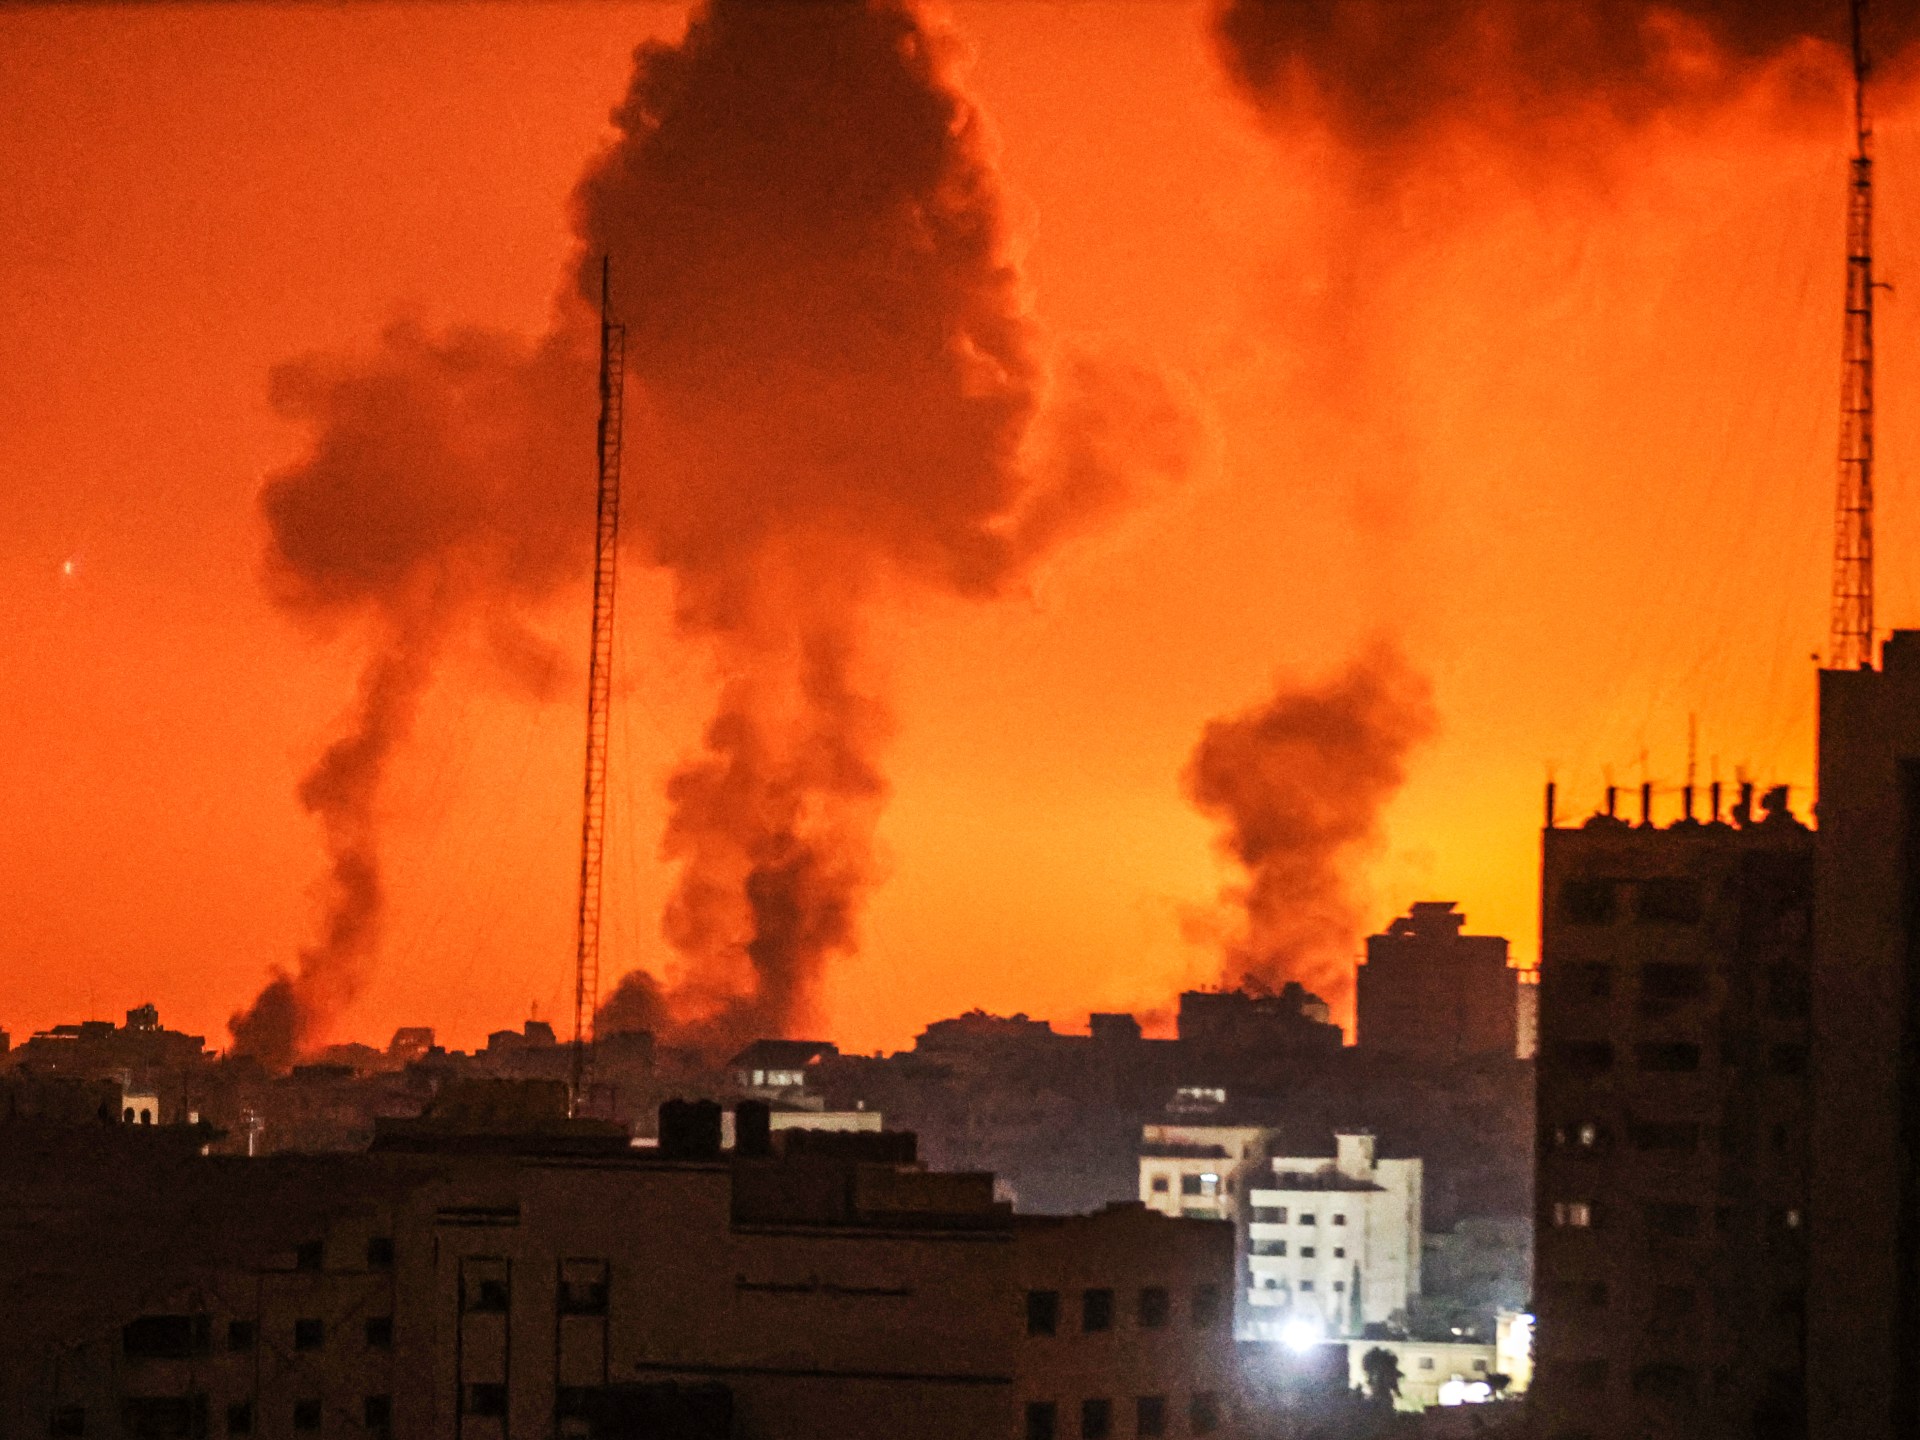 “القسام” تخوض “اشتباكات عنيفة” مع الاحتلال في غزة وتتصدى لتوغل بري بصواريخ كورنيت | أخبار – البوكس نيوز